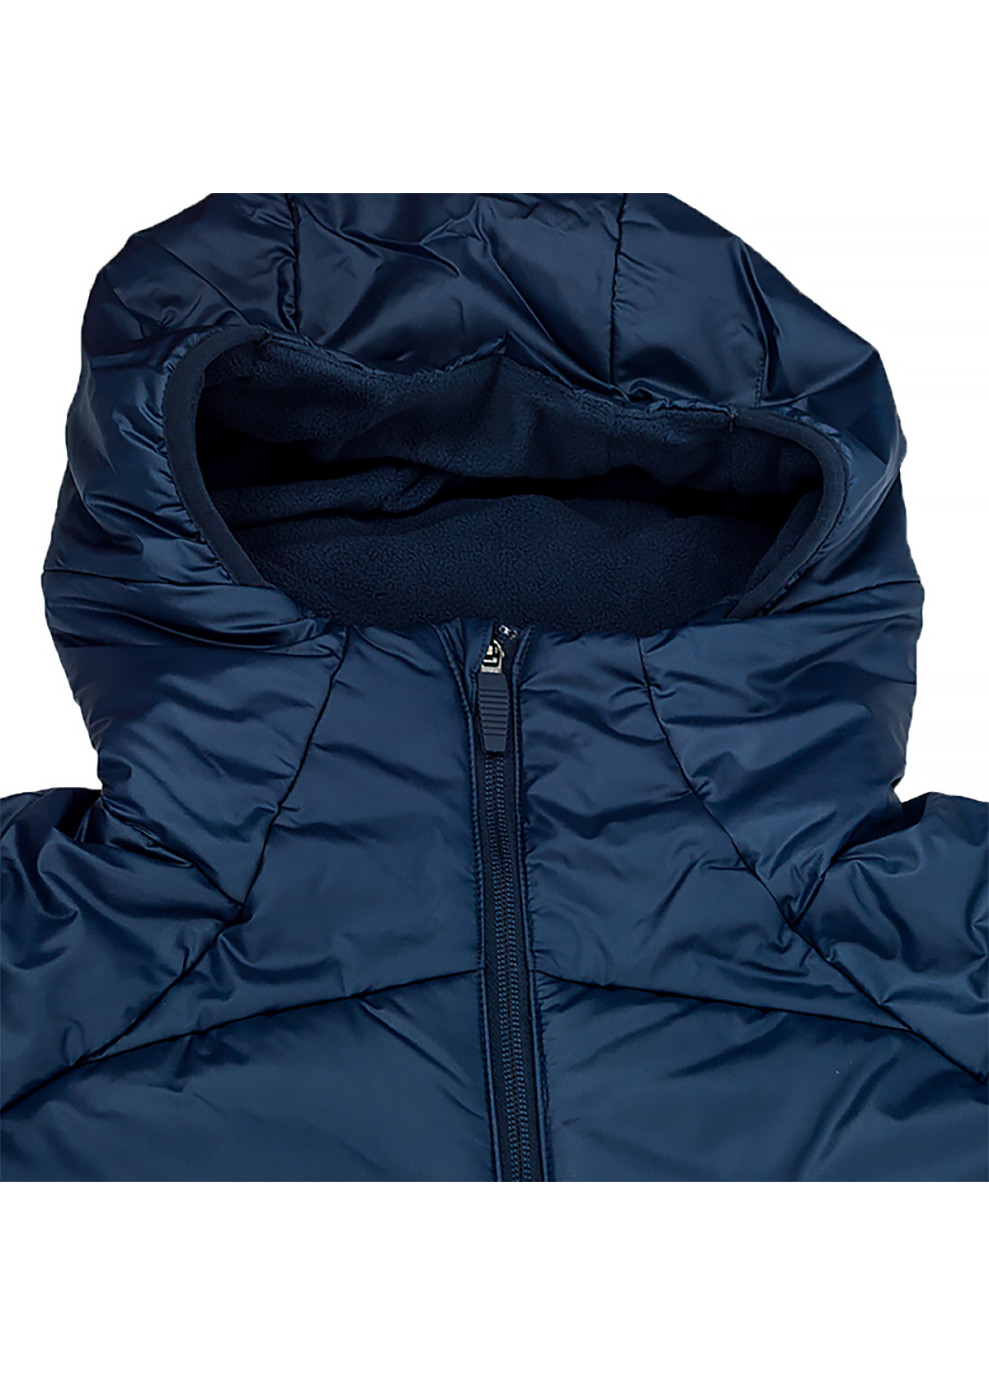 Синяя демисезонная мужская куртка m nk tf acdpr 2in1 sdf jacket синий m (dj6306-451 m) Nike